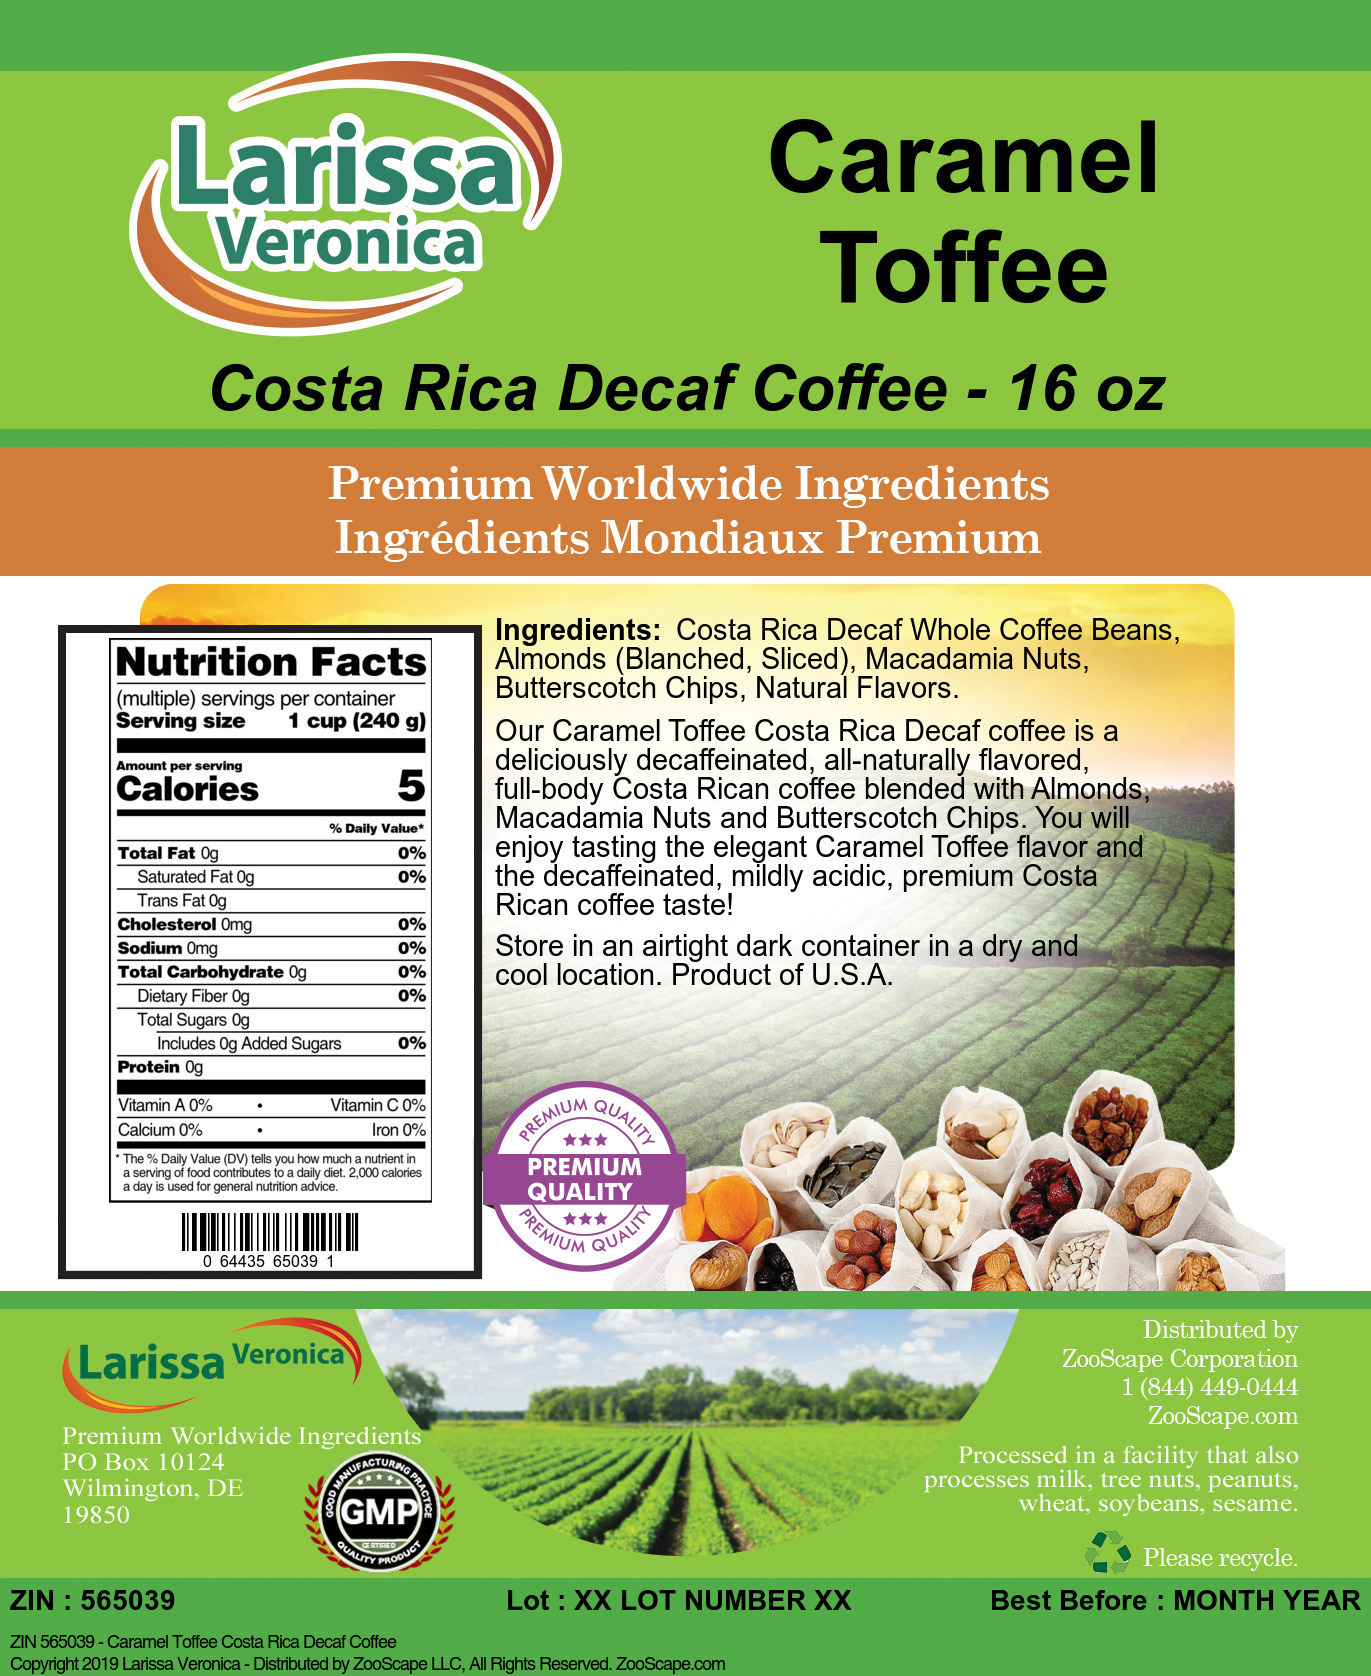 Caramel Toffee Costa Rica Decaf Coffee - Label